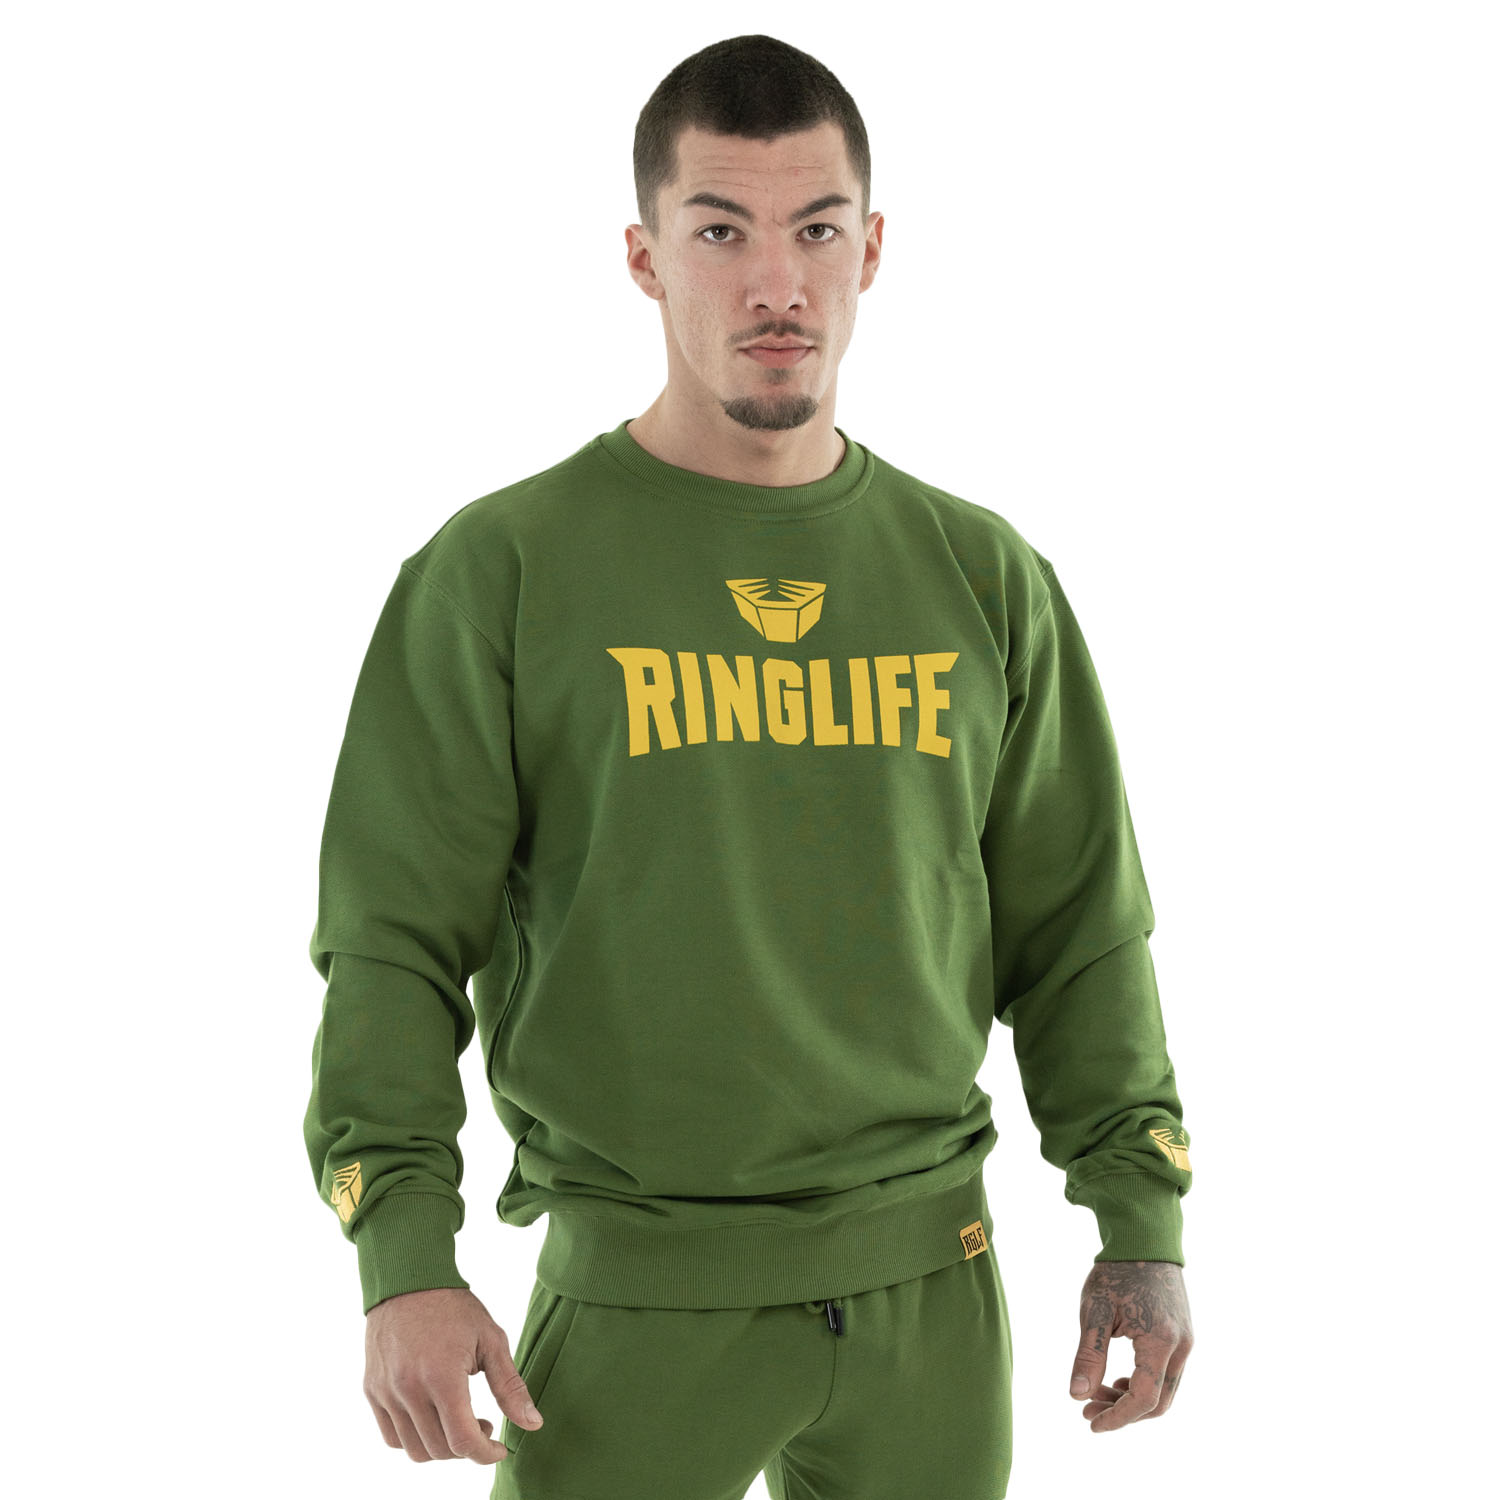 RINGLIFE Pullover, Logo, grün-gelb